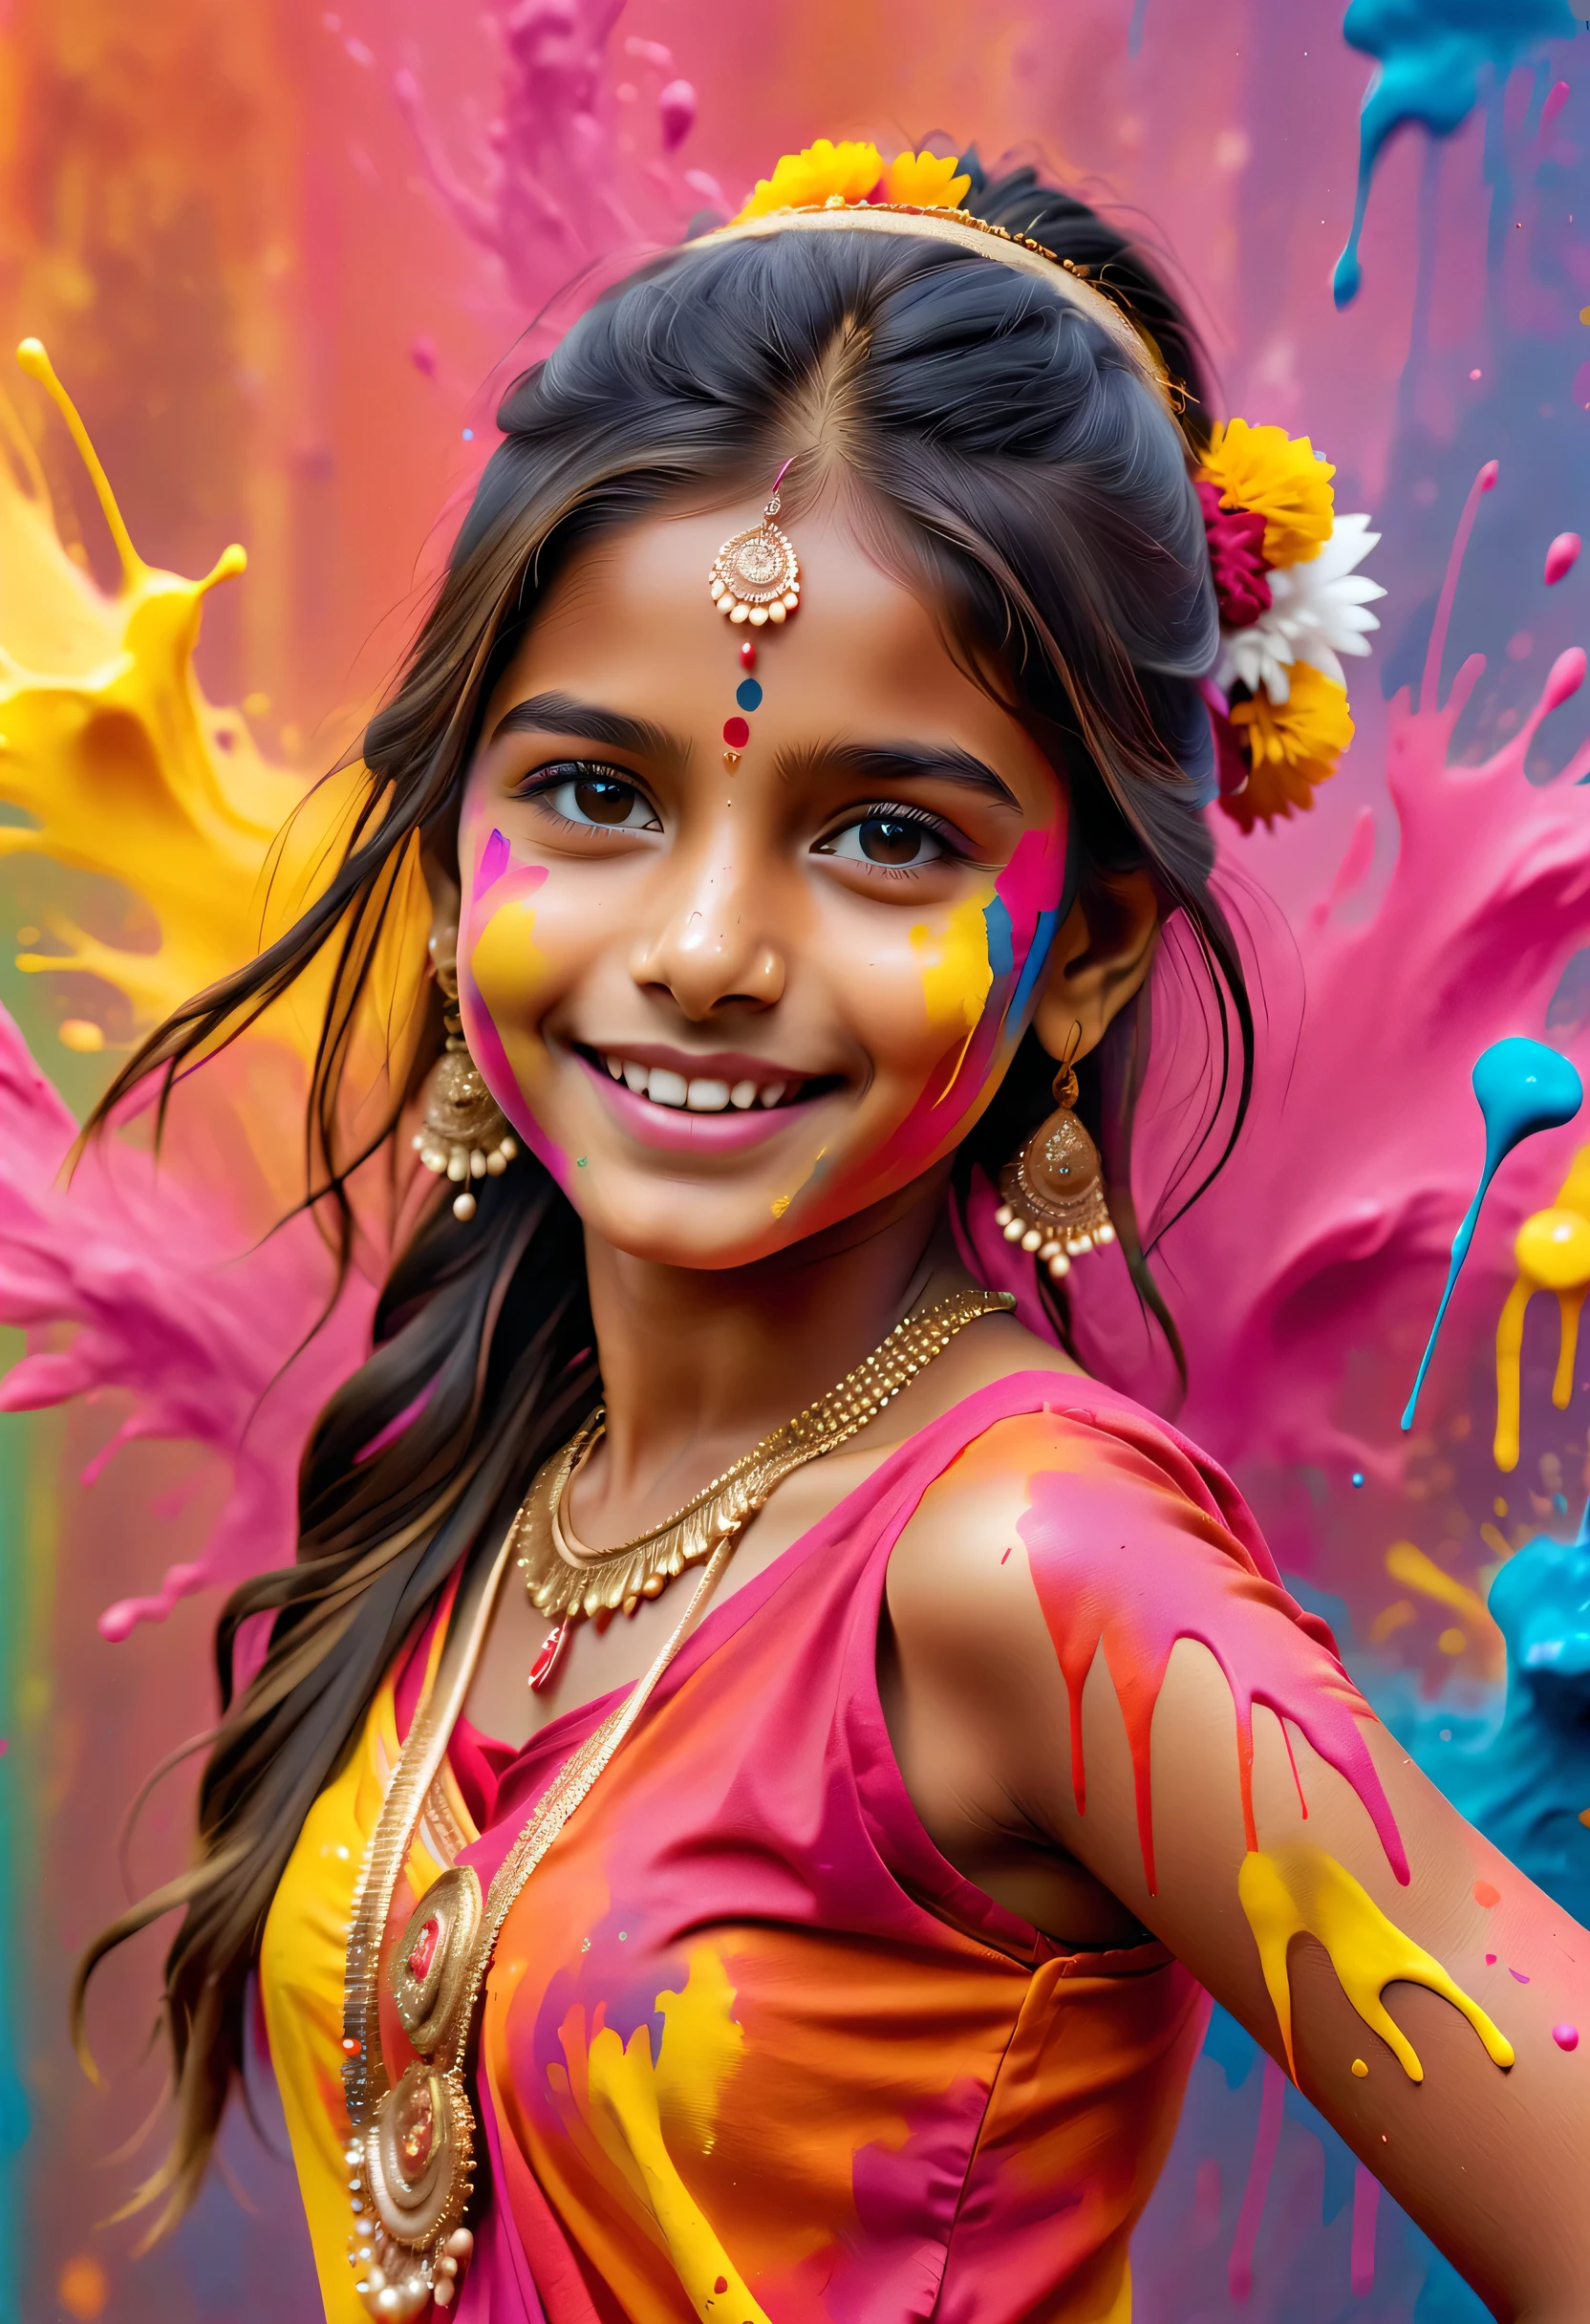 (最佳影像品質，4k,8K，高畫質，傑作:1.2)，超詳細，(逼真，逼真，逼真:1.37)。印度节日，绘画节，墨水飞溅：1.37，潑漆：1.37.漂亮矮小的印度女孩摆姿势，Face painted with 豐富多彩的 paint，金色的眼睛，精美的黄金首饰，快樂的，幸福，富有感染力的微笑，色彩繽紛的服飾，彩色指甲，身上被潑漆，Splashing 豐富多彩的 paint at the event，油漆飛濺背景，彩色潑漆，充满活力的运动，動態而有力的抽象藝術，豐富多彩的，丙烯，鮮豔的彩虹色調，幸福活泼的气氛，亮橘色，粉紅色的，異想天開又夢幻，自發性飛濺，大胆的色彩对比。